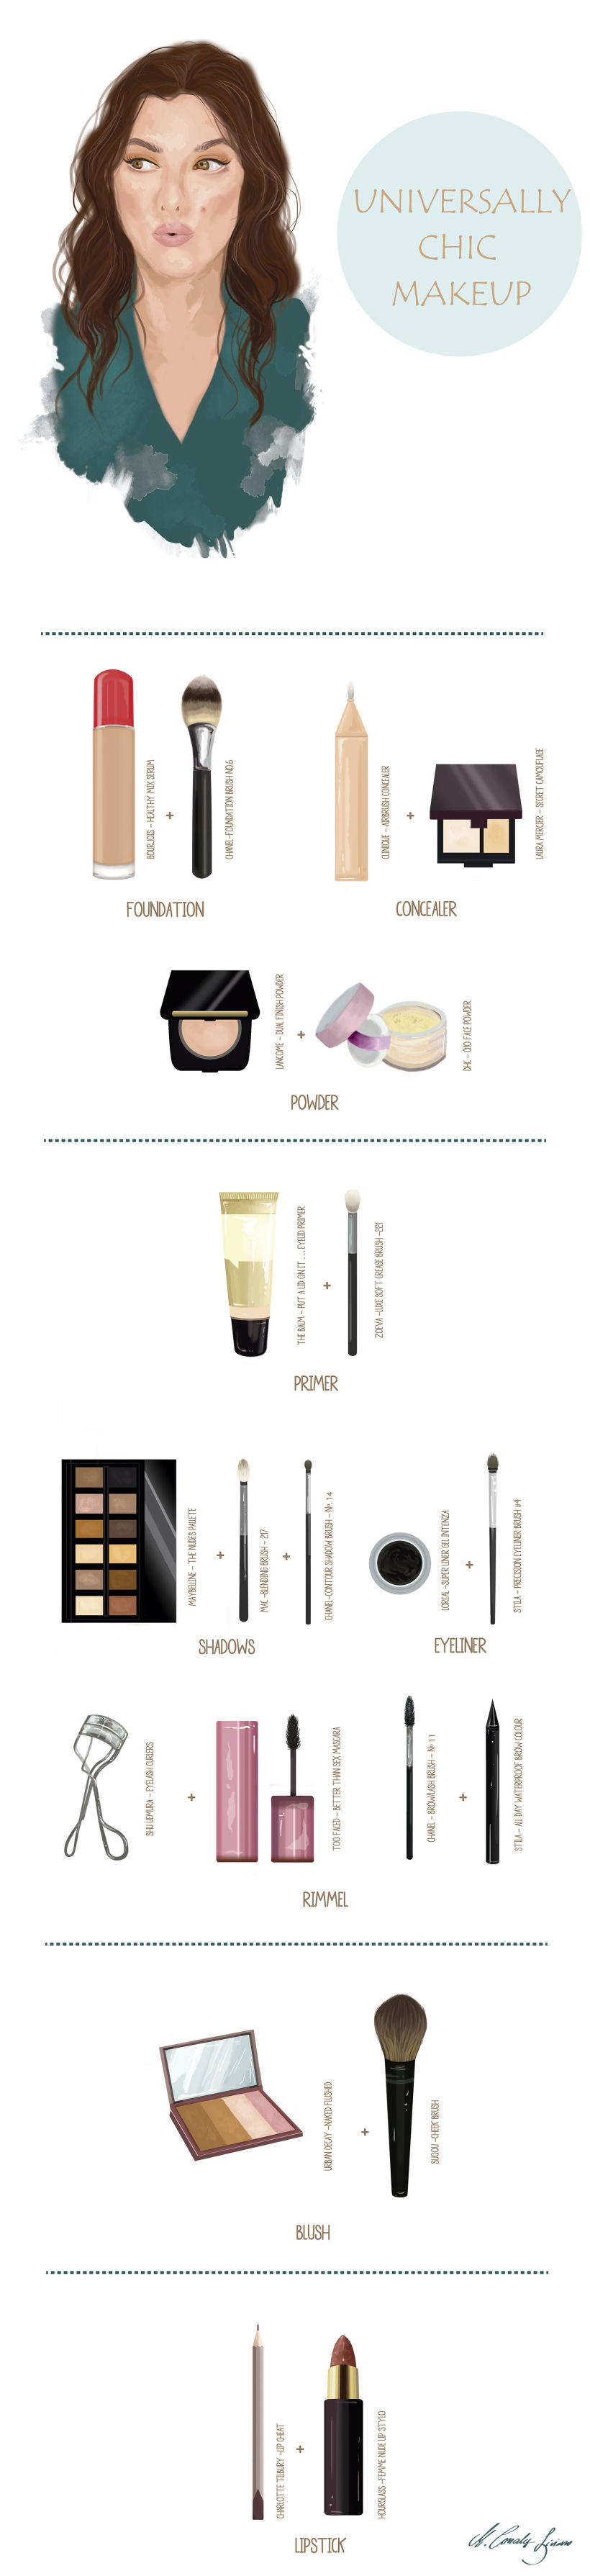 Infografía sobre maquillaje paso a paso 0